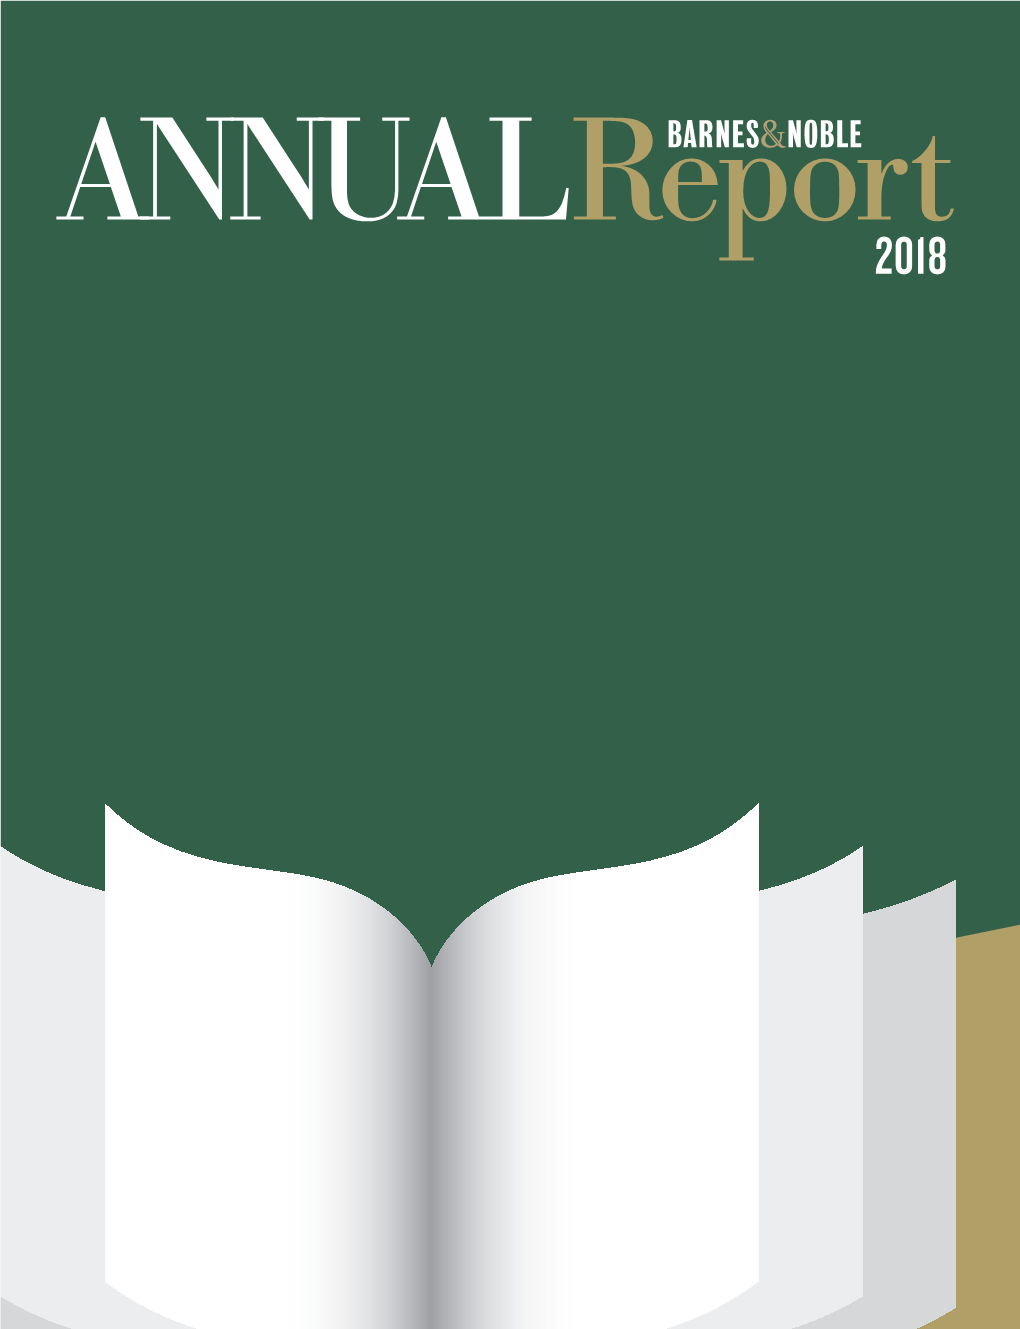 Barnes & Noble ANNUAL Report 2018